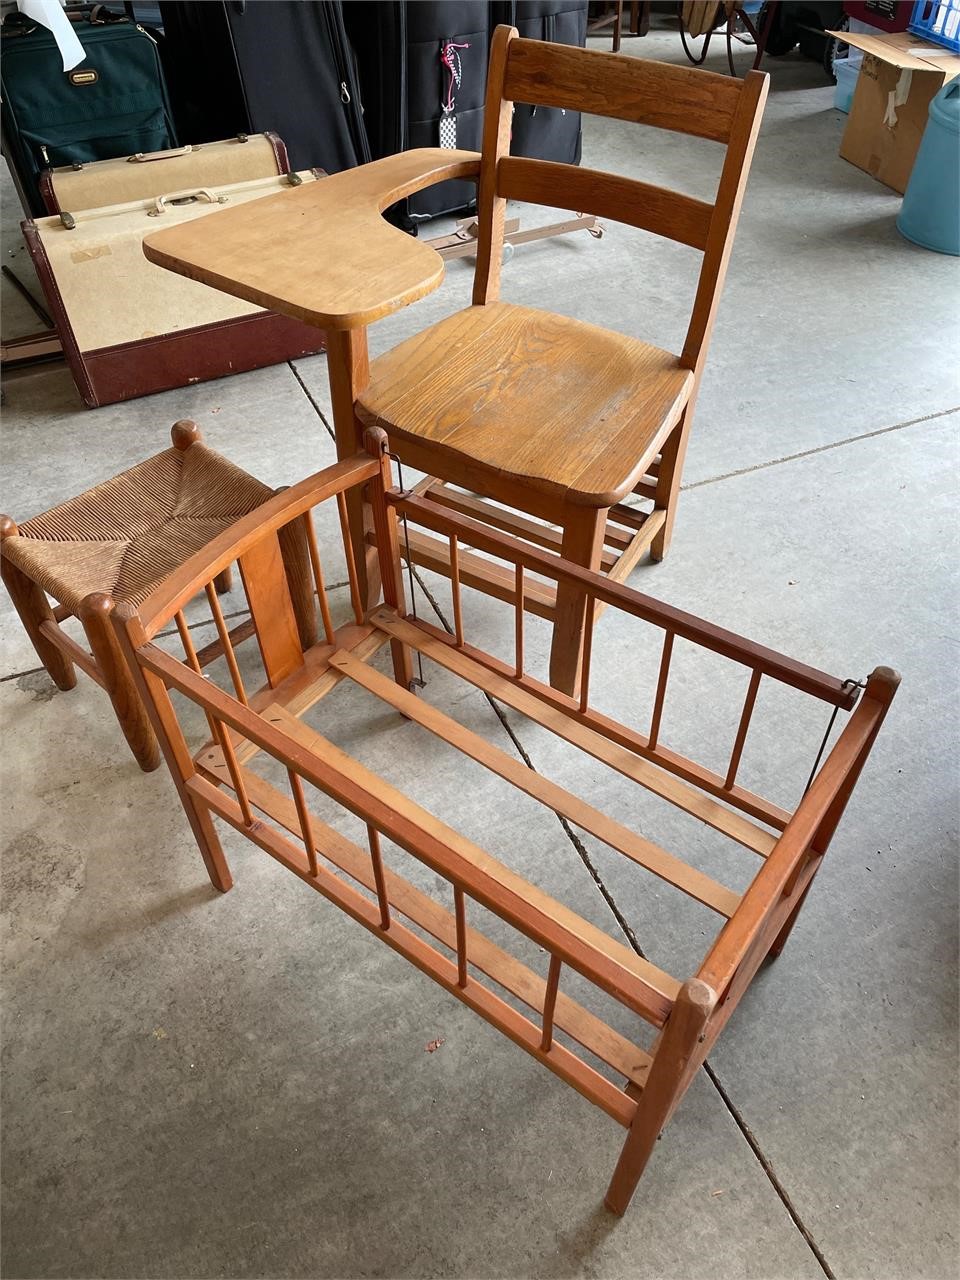 3 - antique children’s furniture